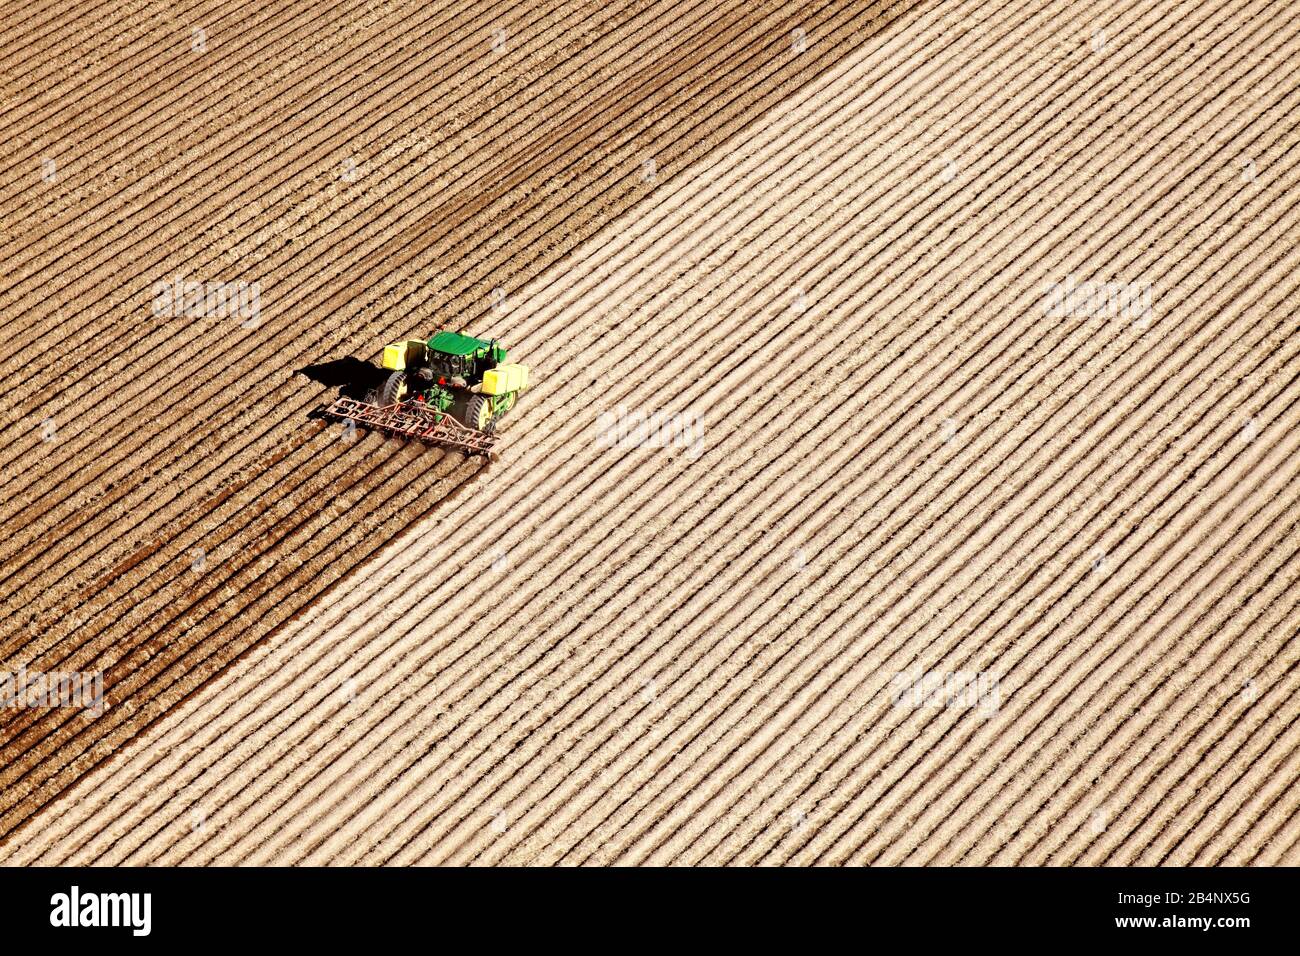 American Falls, Idaho, USA 17 aprile 2015 una vista aerea delle macchine agricole che piantano patate nei fertili campi agricoli dell'Idaho. Foto Stock